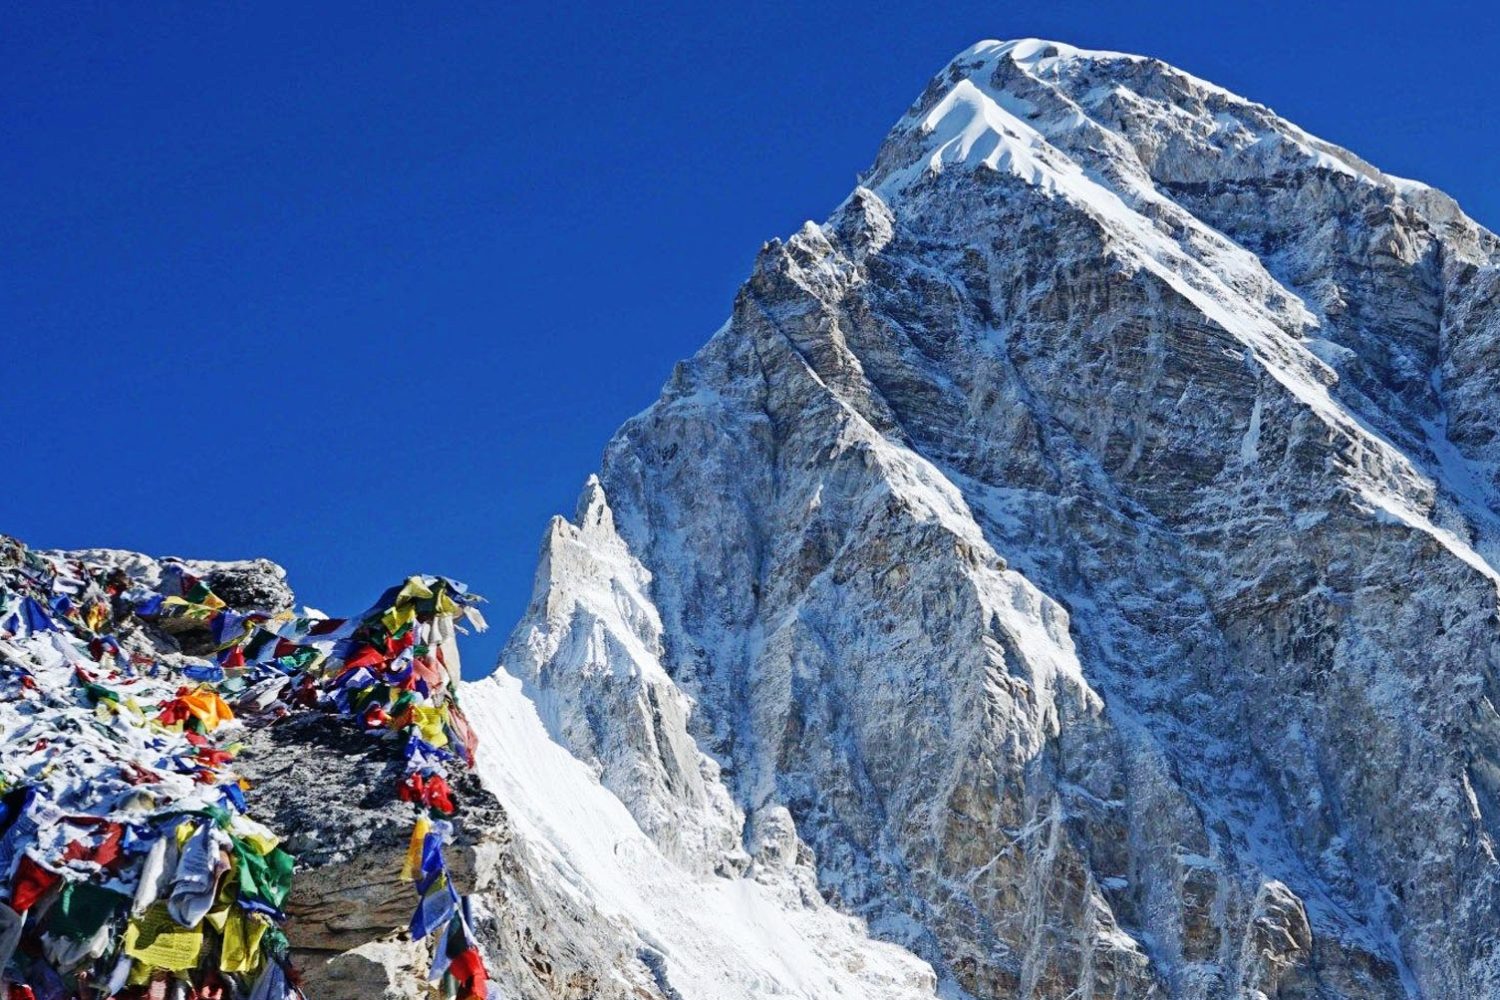 Kalapather (5,550 meters), the popular Himalayan viewpoint